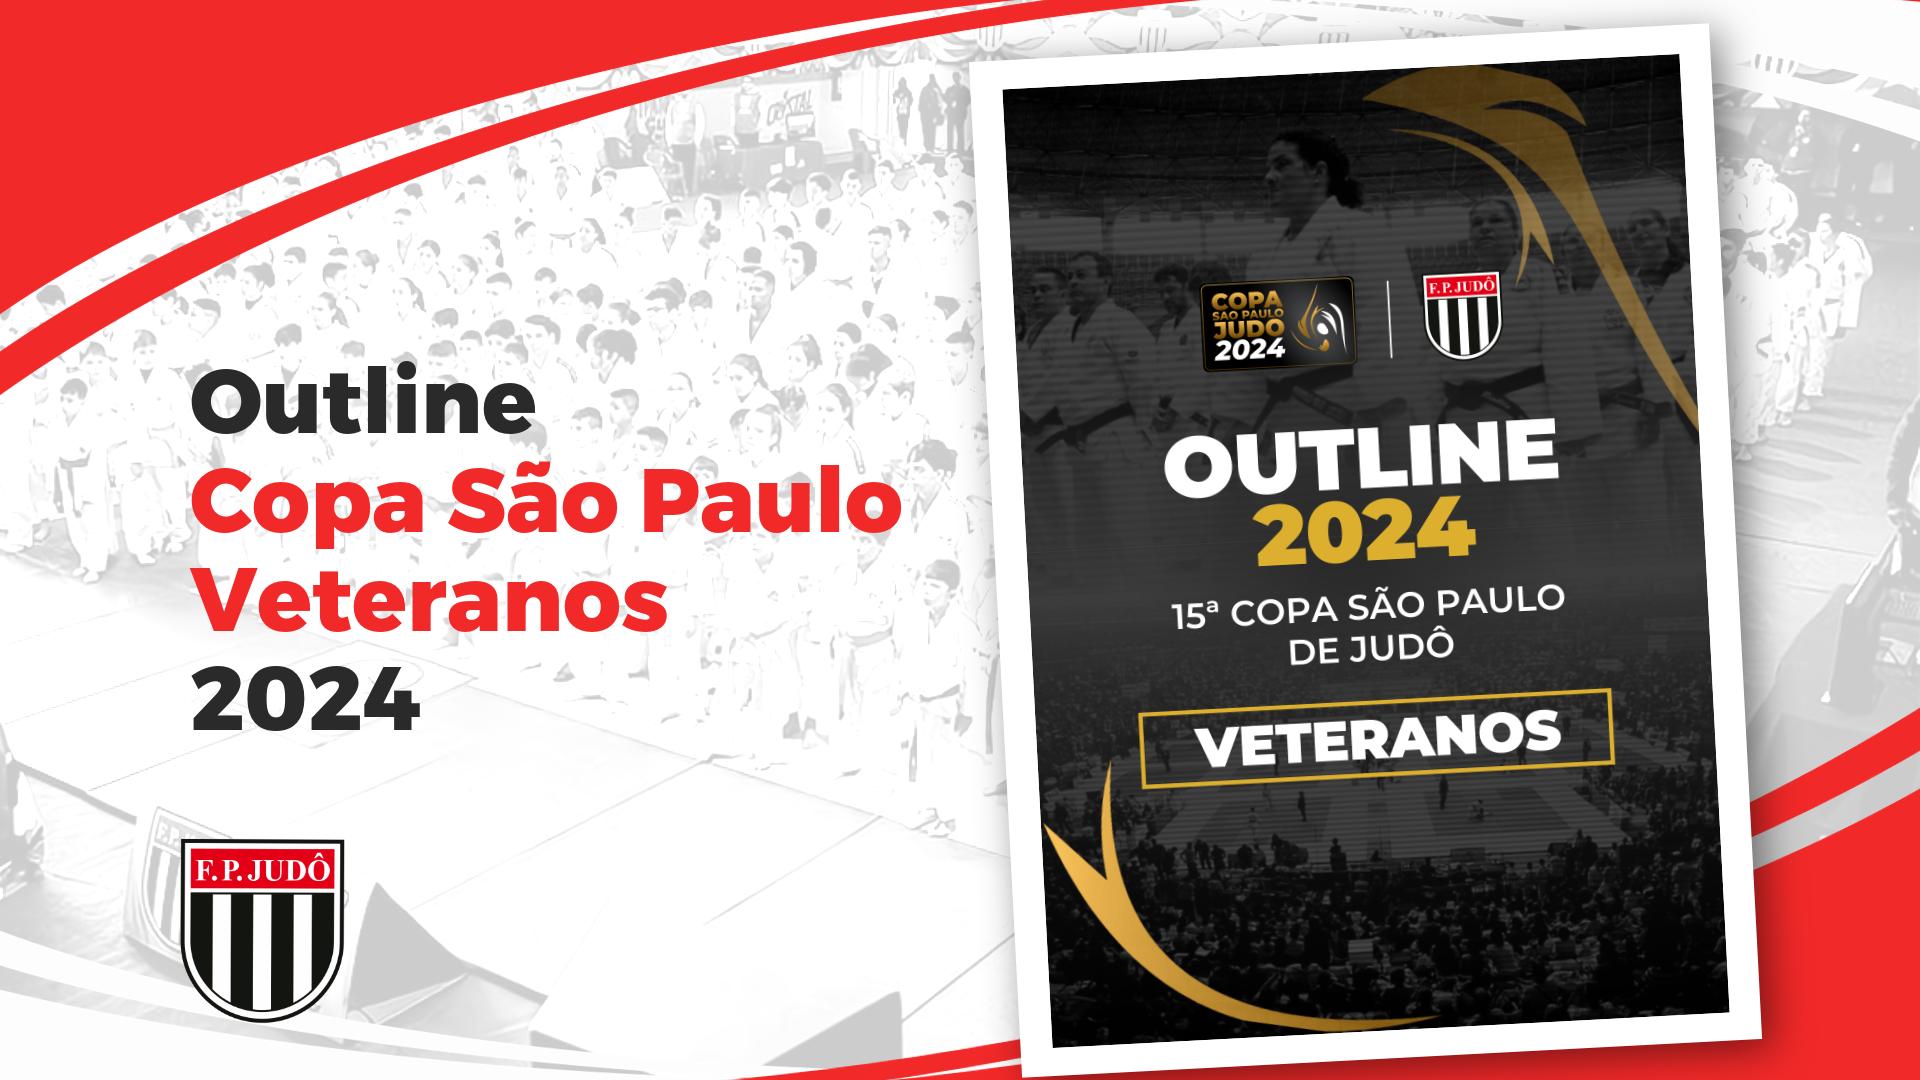 Outline Copa São Paulo 2024 - Veteranos